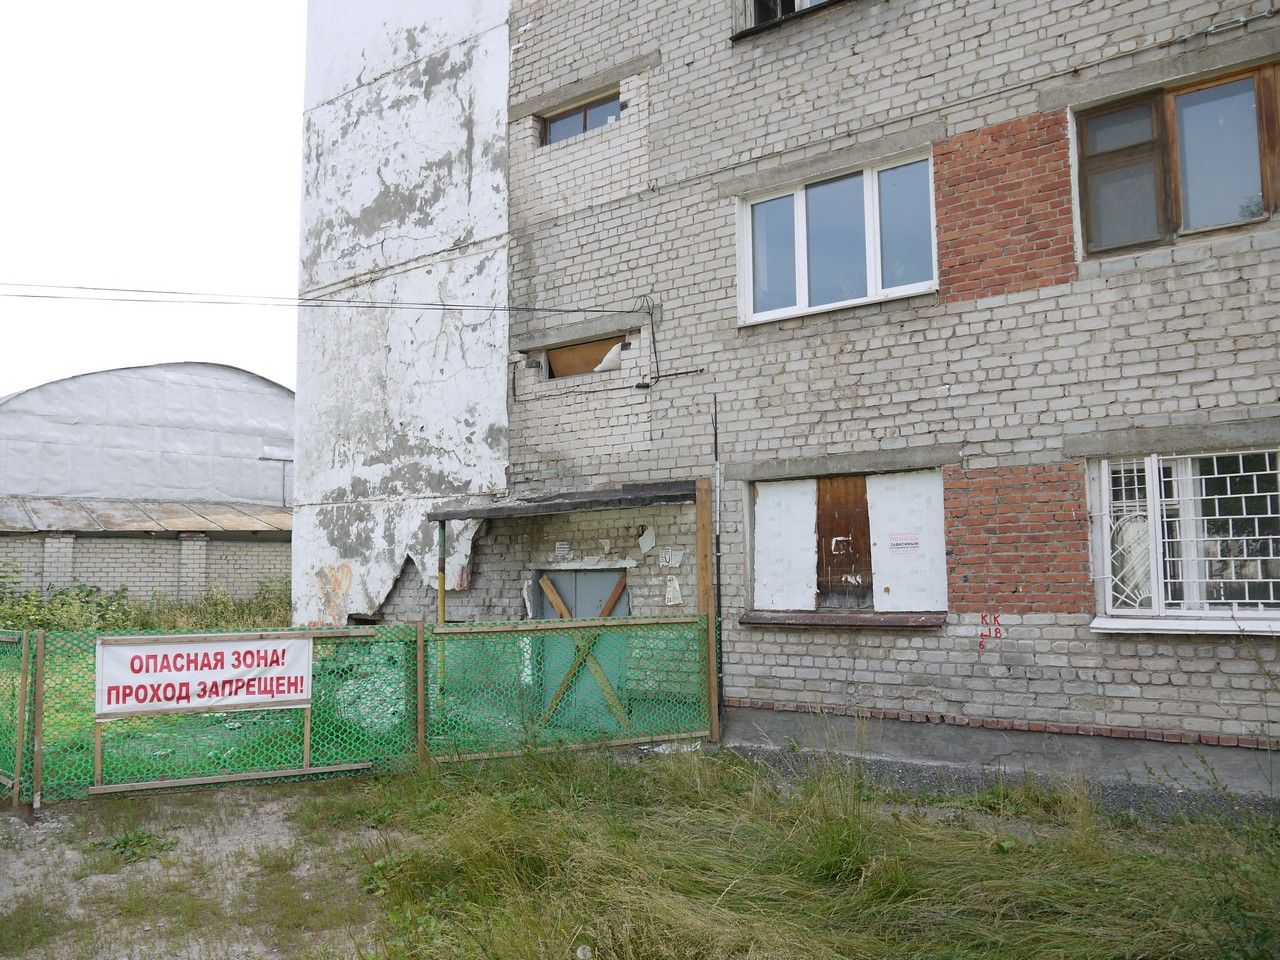 Дом №45а по ул.Гоголя, от которого  отвалилась часть стены, подлежит сносу